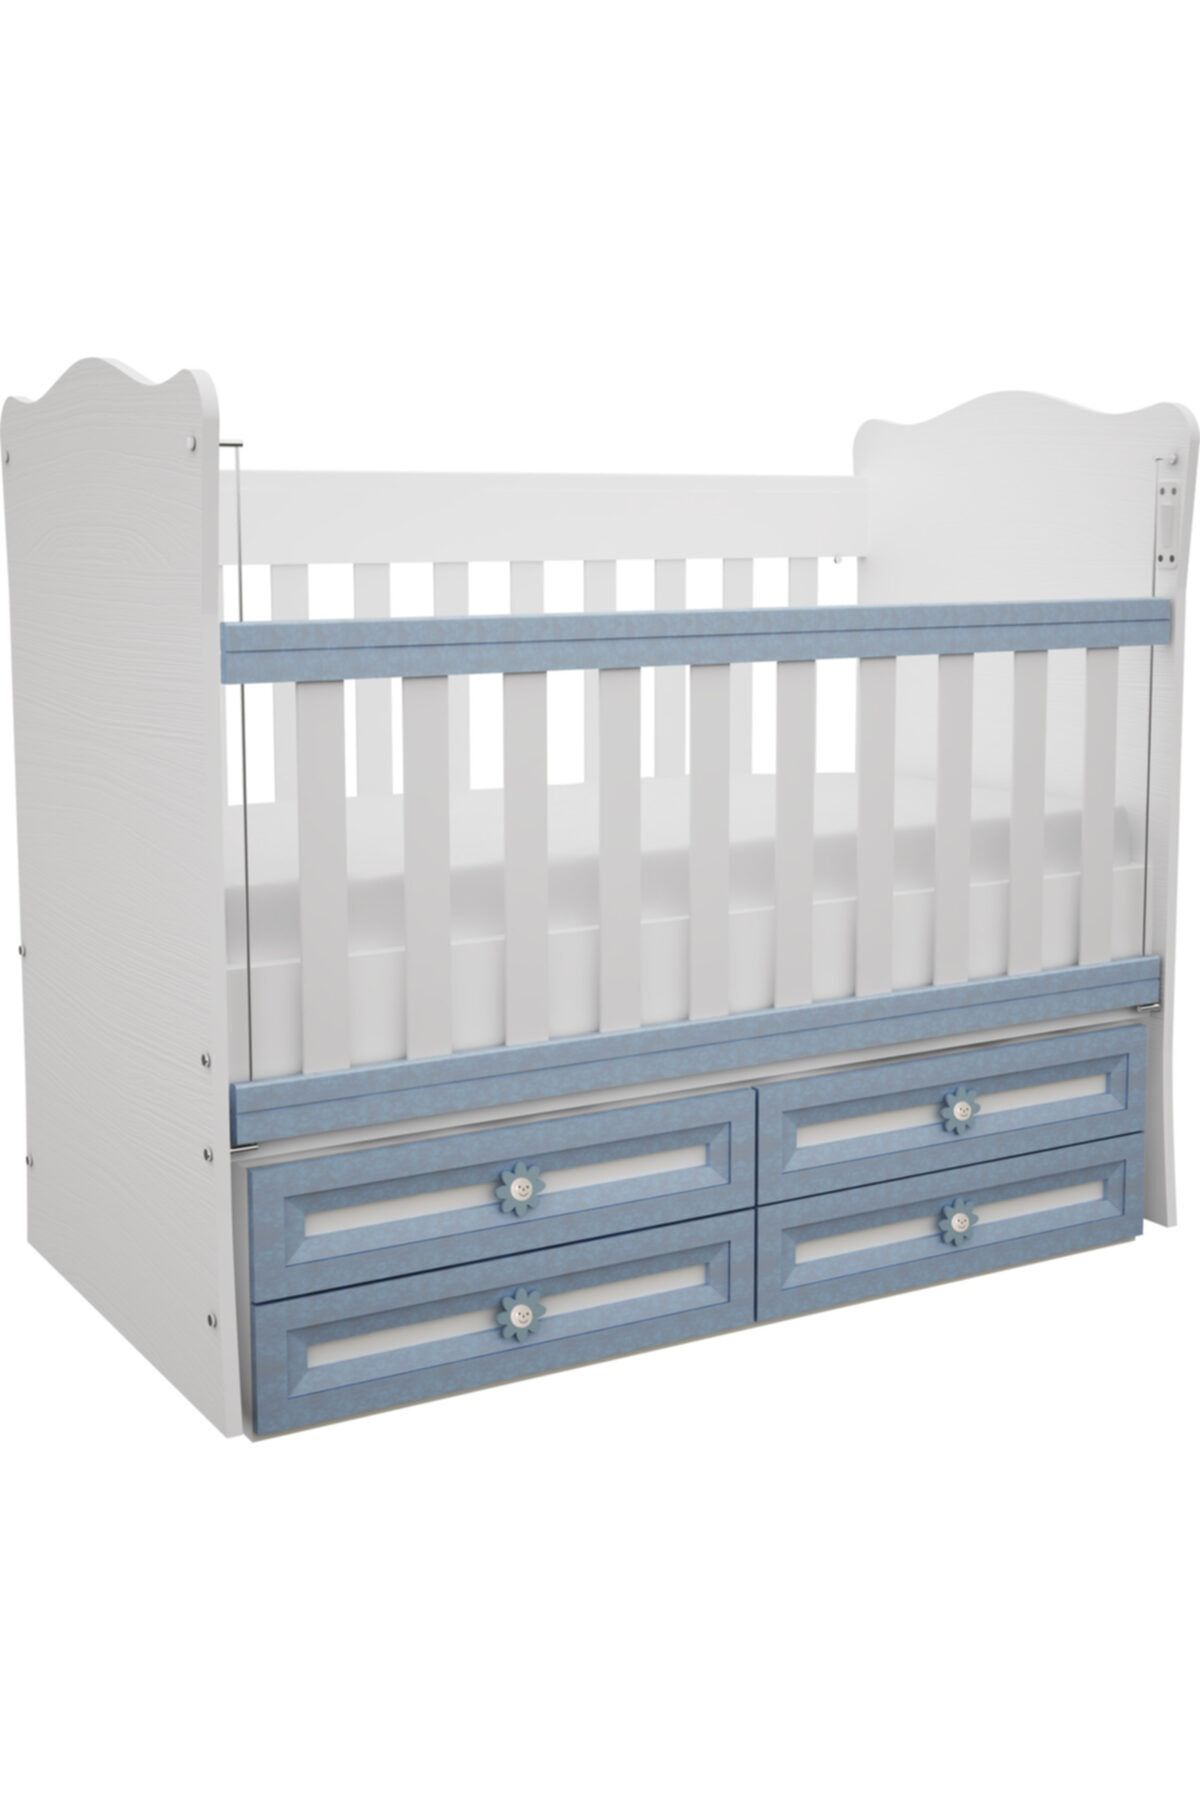 Babyhope Sallanan 4 Çekmeceli Asansörlü Mobilya Beşik Karyola 910-42 Mavi 60x120